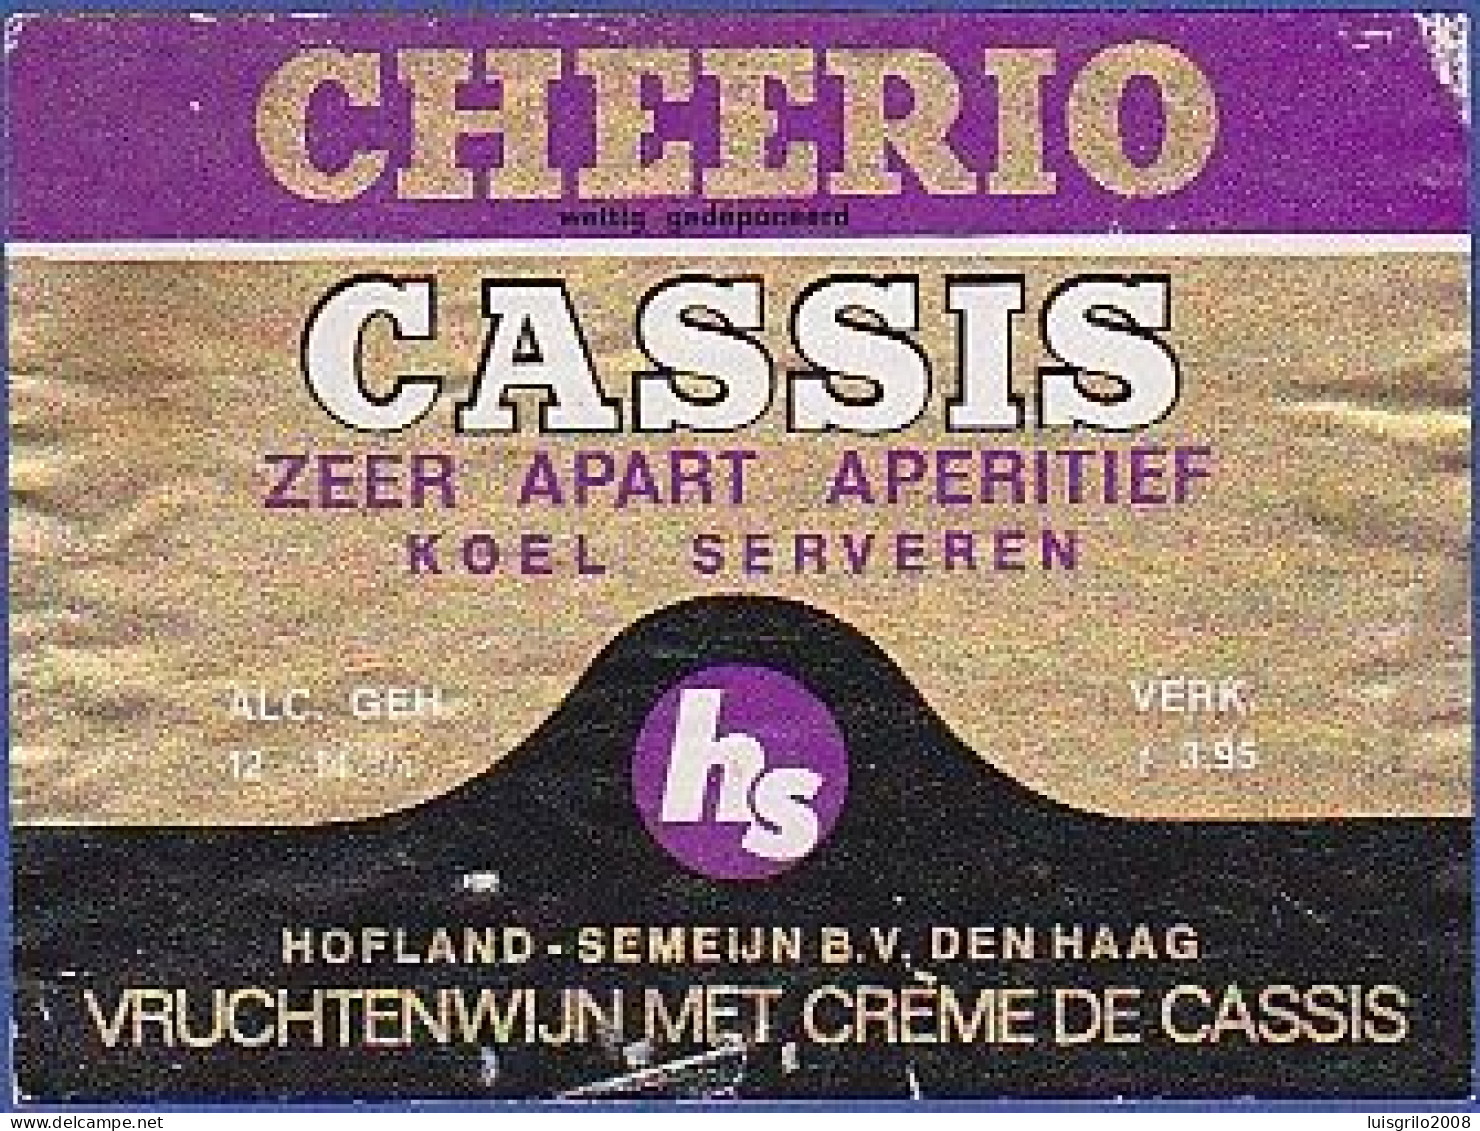 CHEERIO - CASSIS. Zeer Apart Aperitif. Koel Serveren -|- Vruchtenwijn Met Crème De Cassis - Alcohols & Spirits